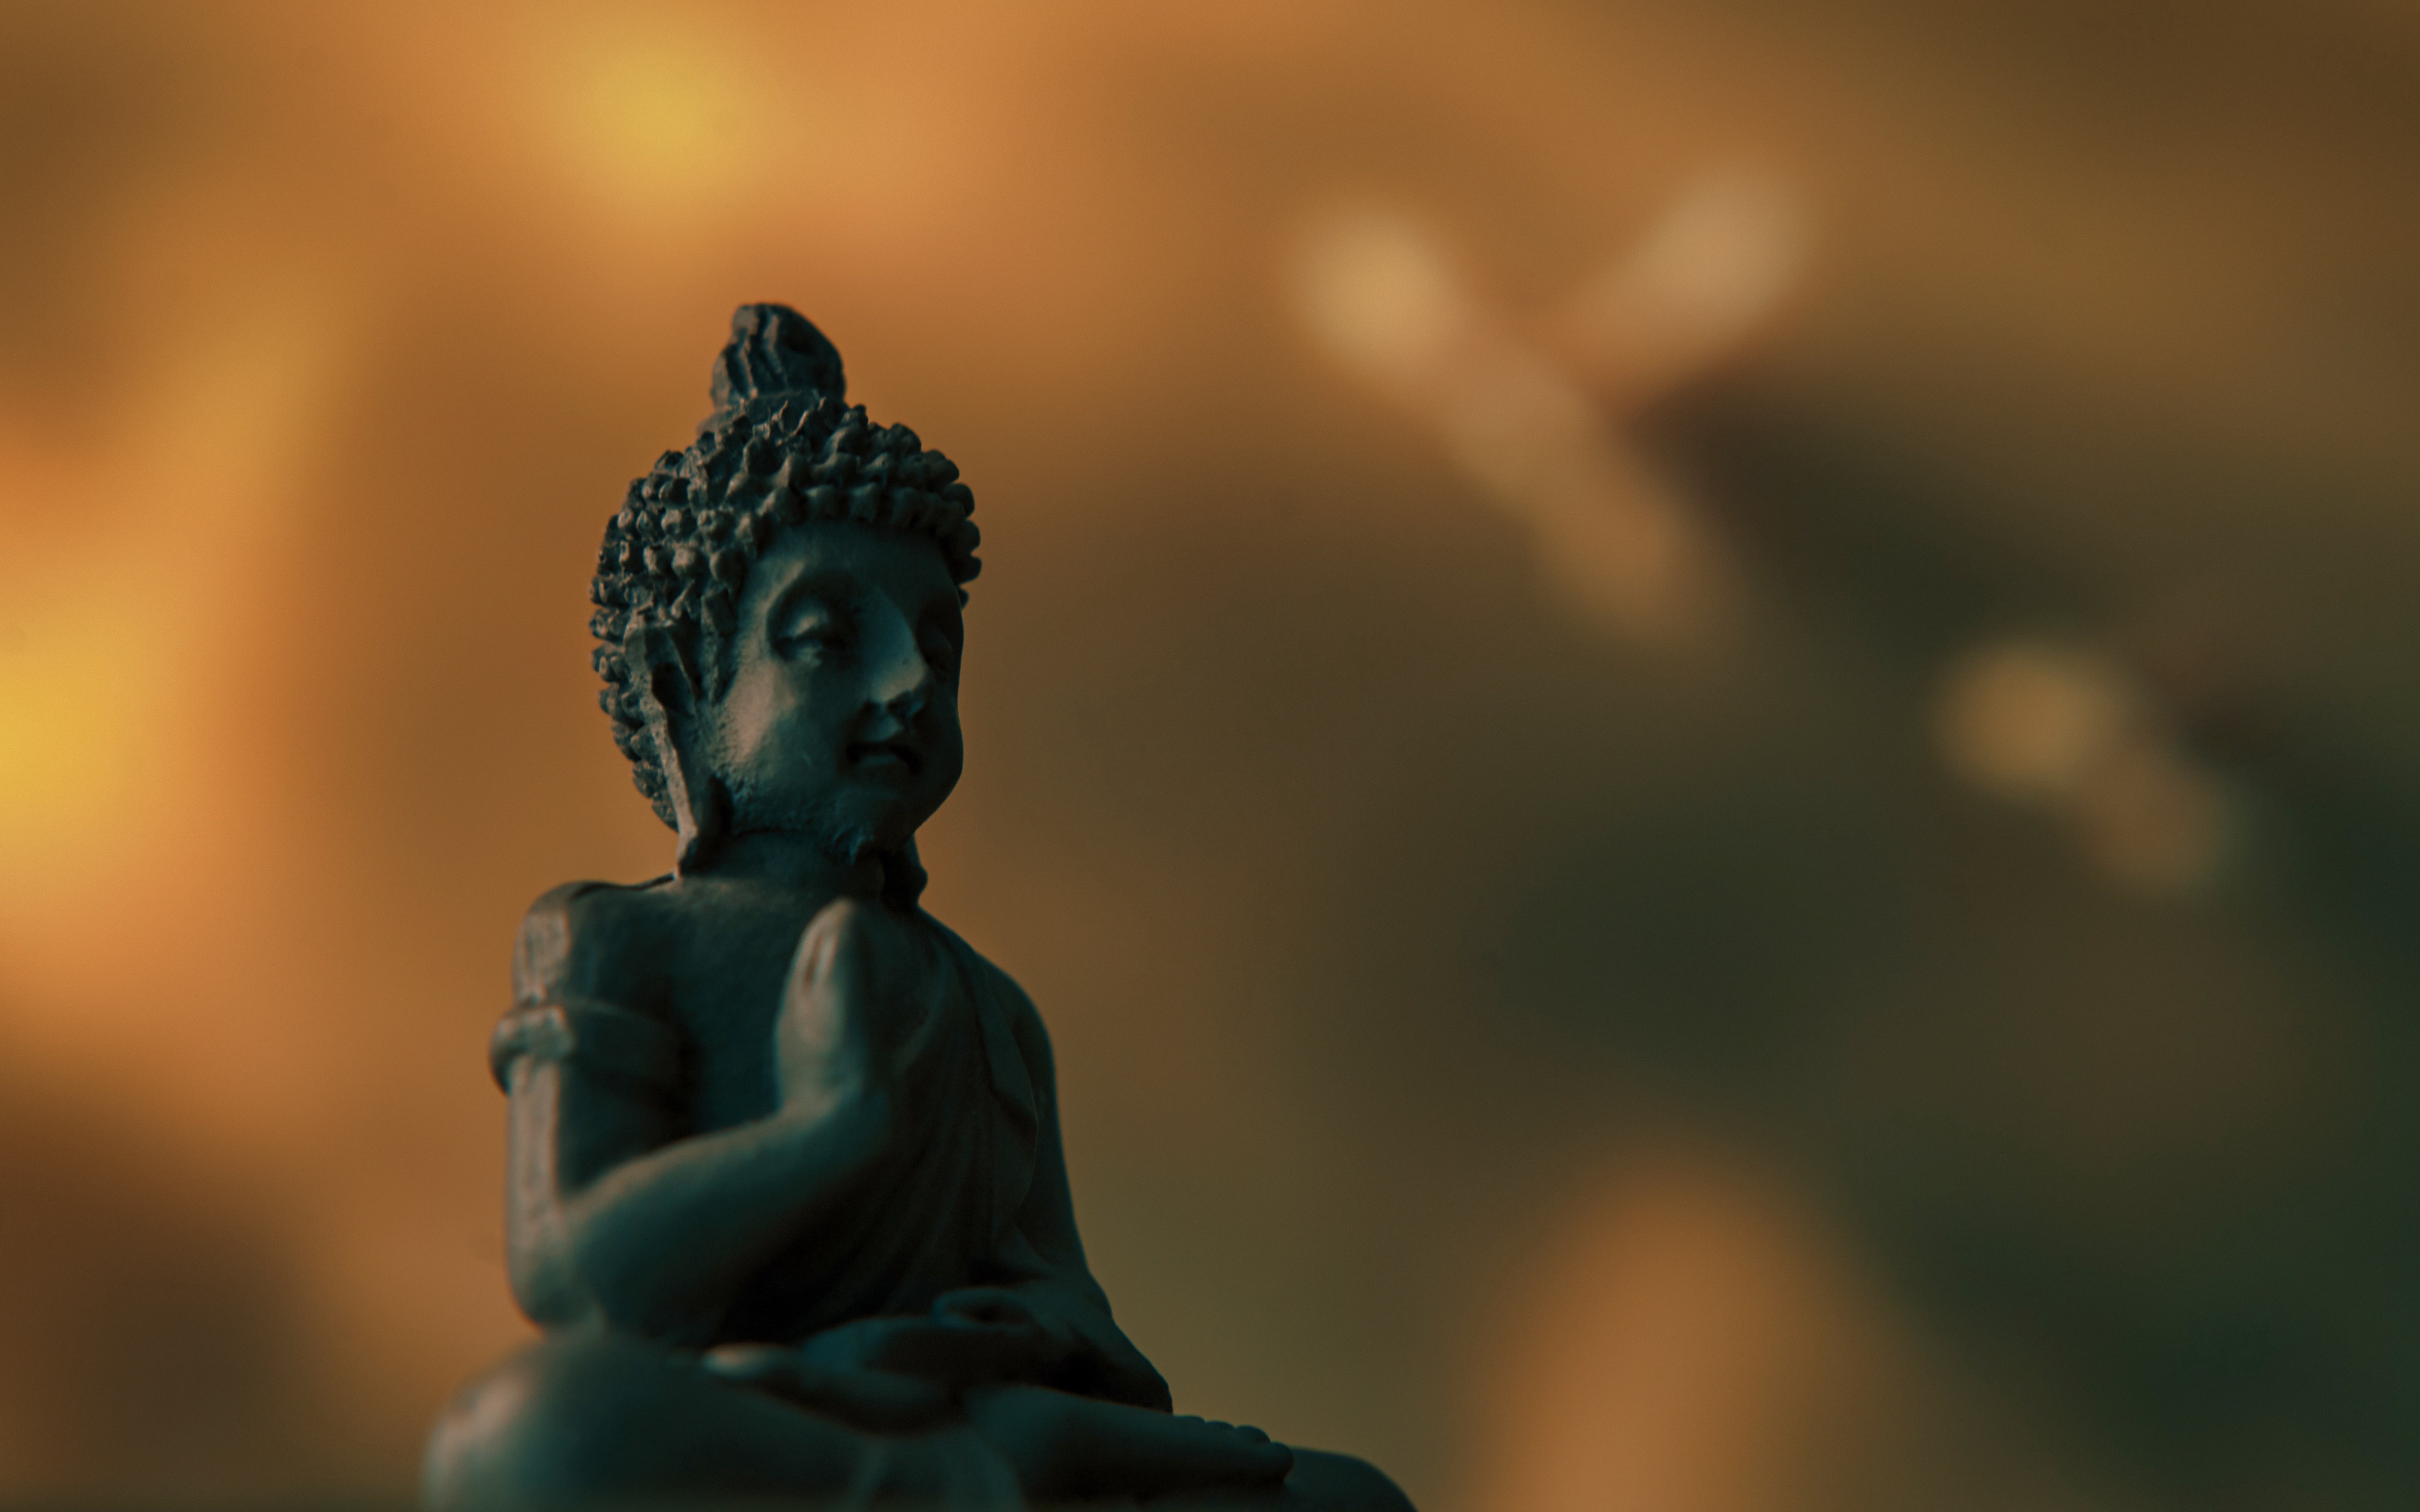 Скачать обои бесплатно Будда, Статуя, Религиозные картинка на рабочий стол ПК